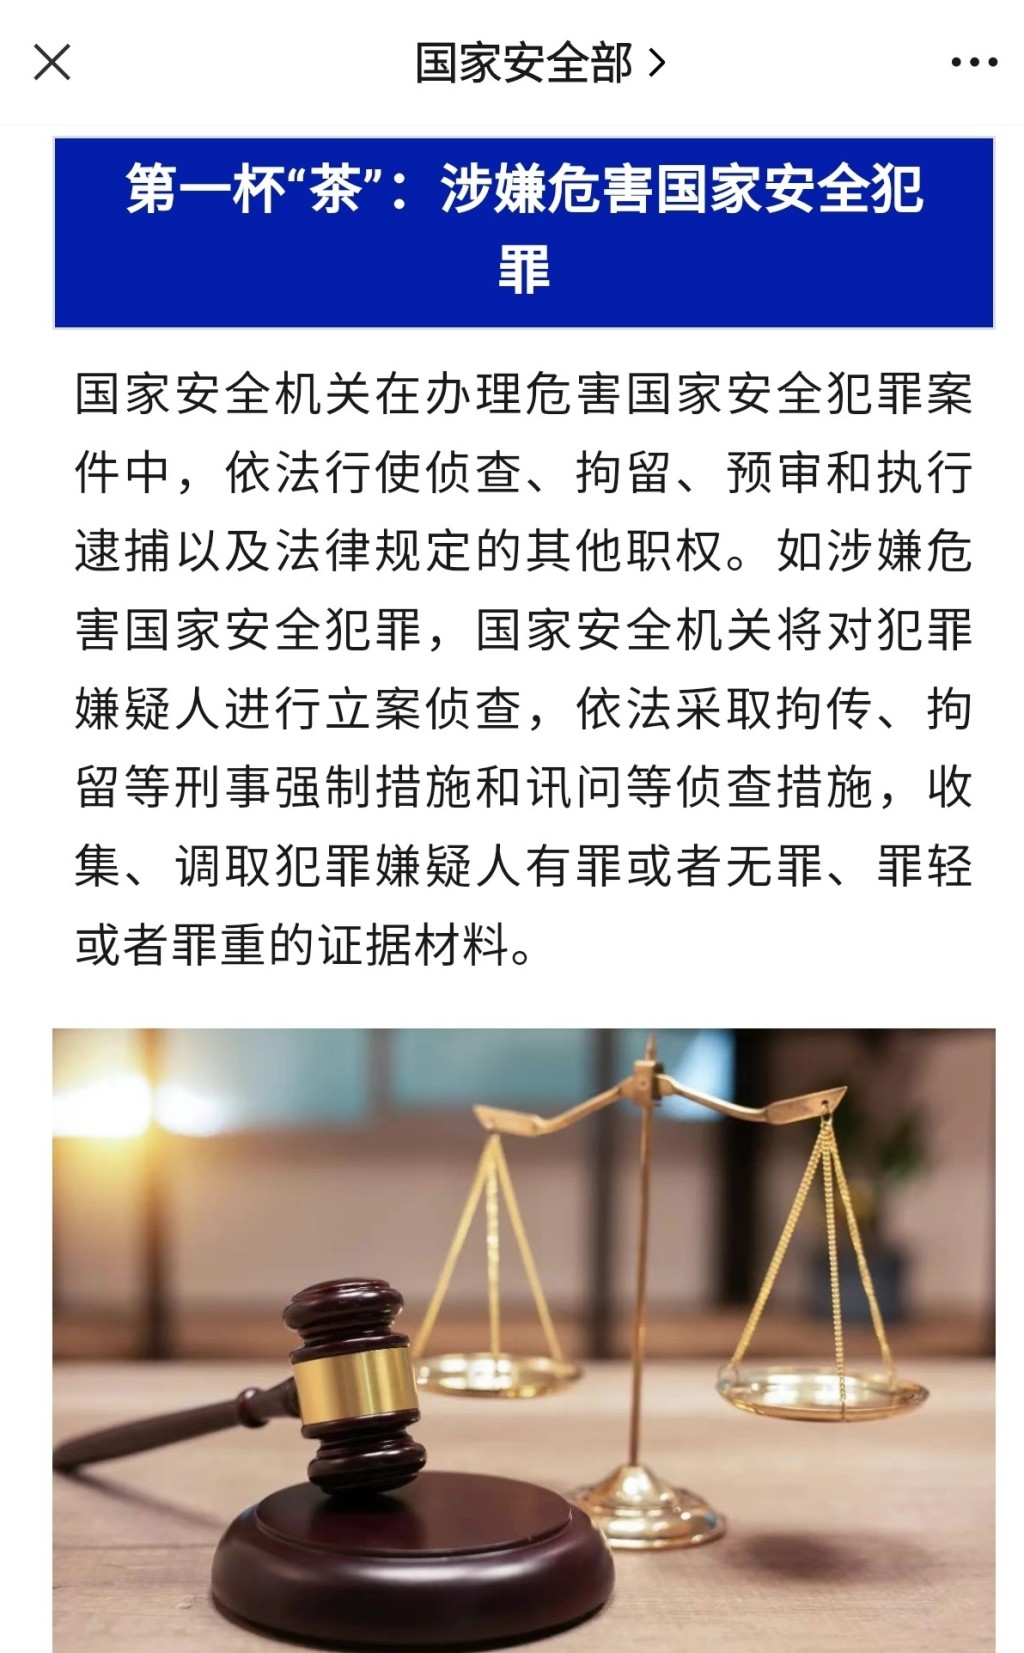 國安部發文指出觸犯10種行為會被「請飲茶」。微博